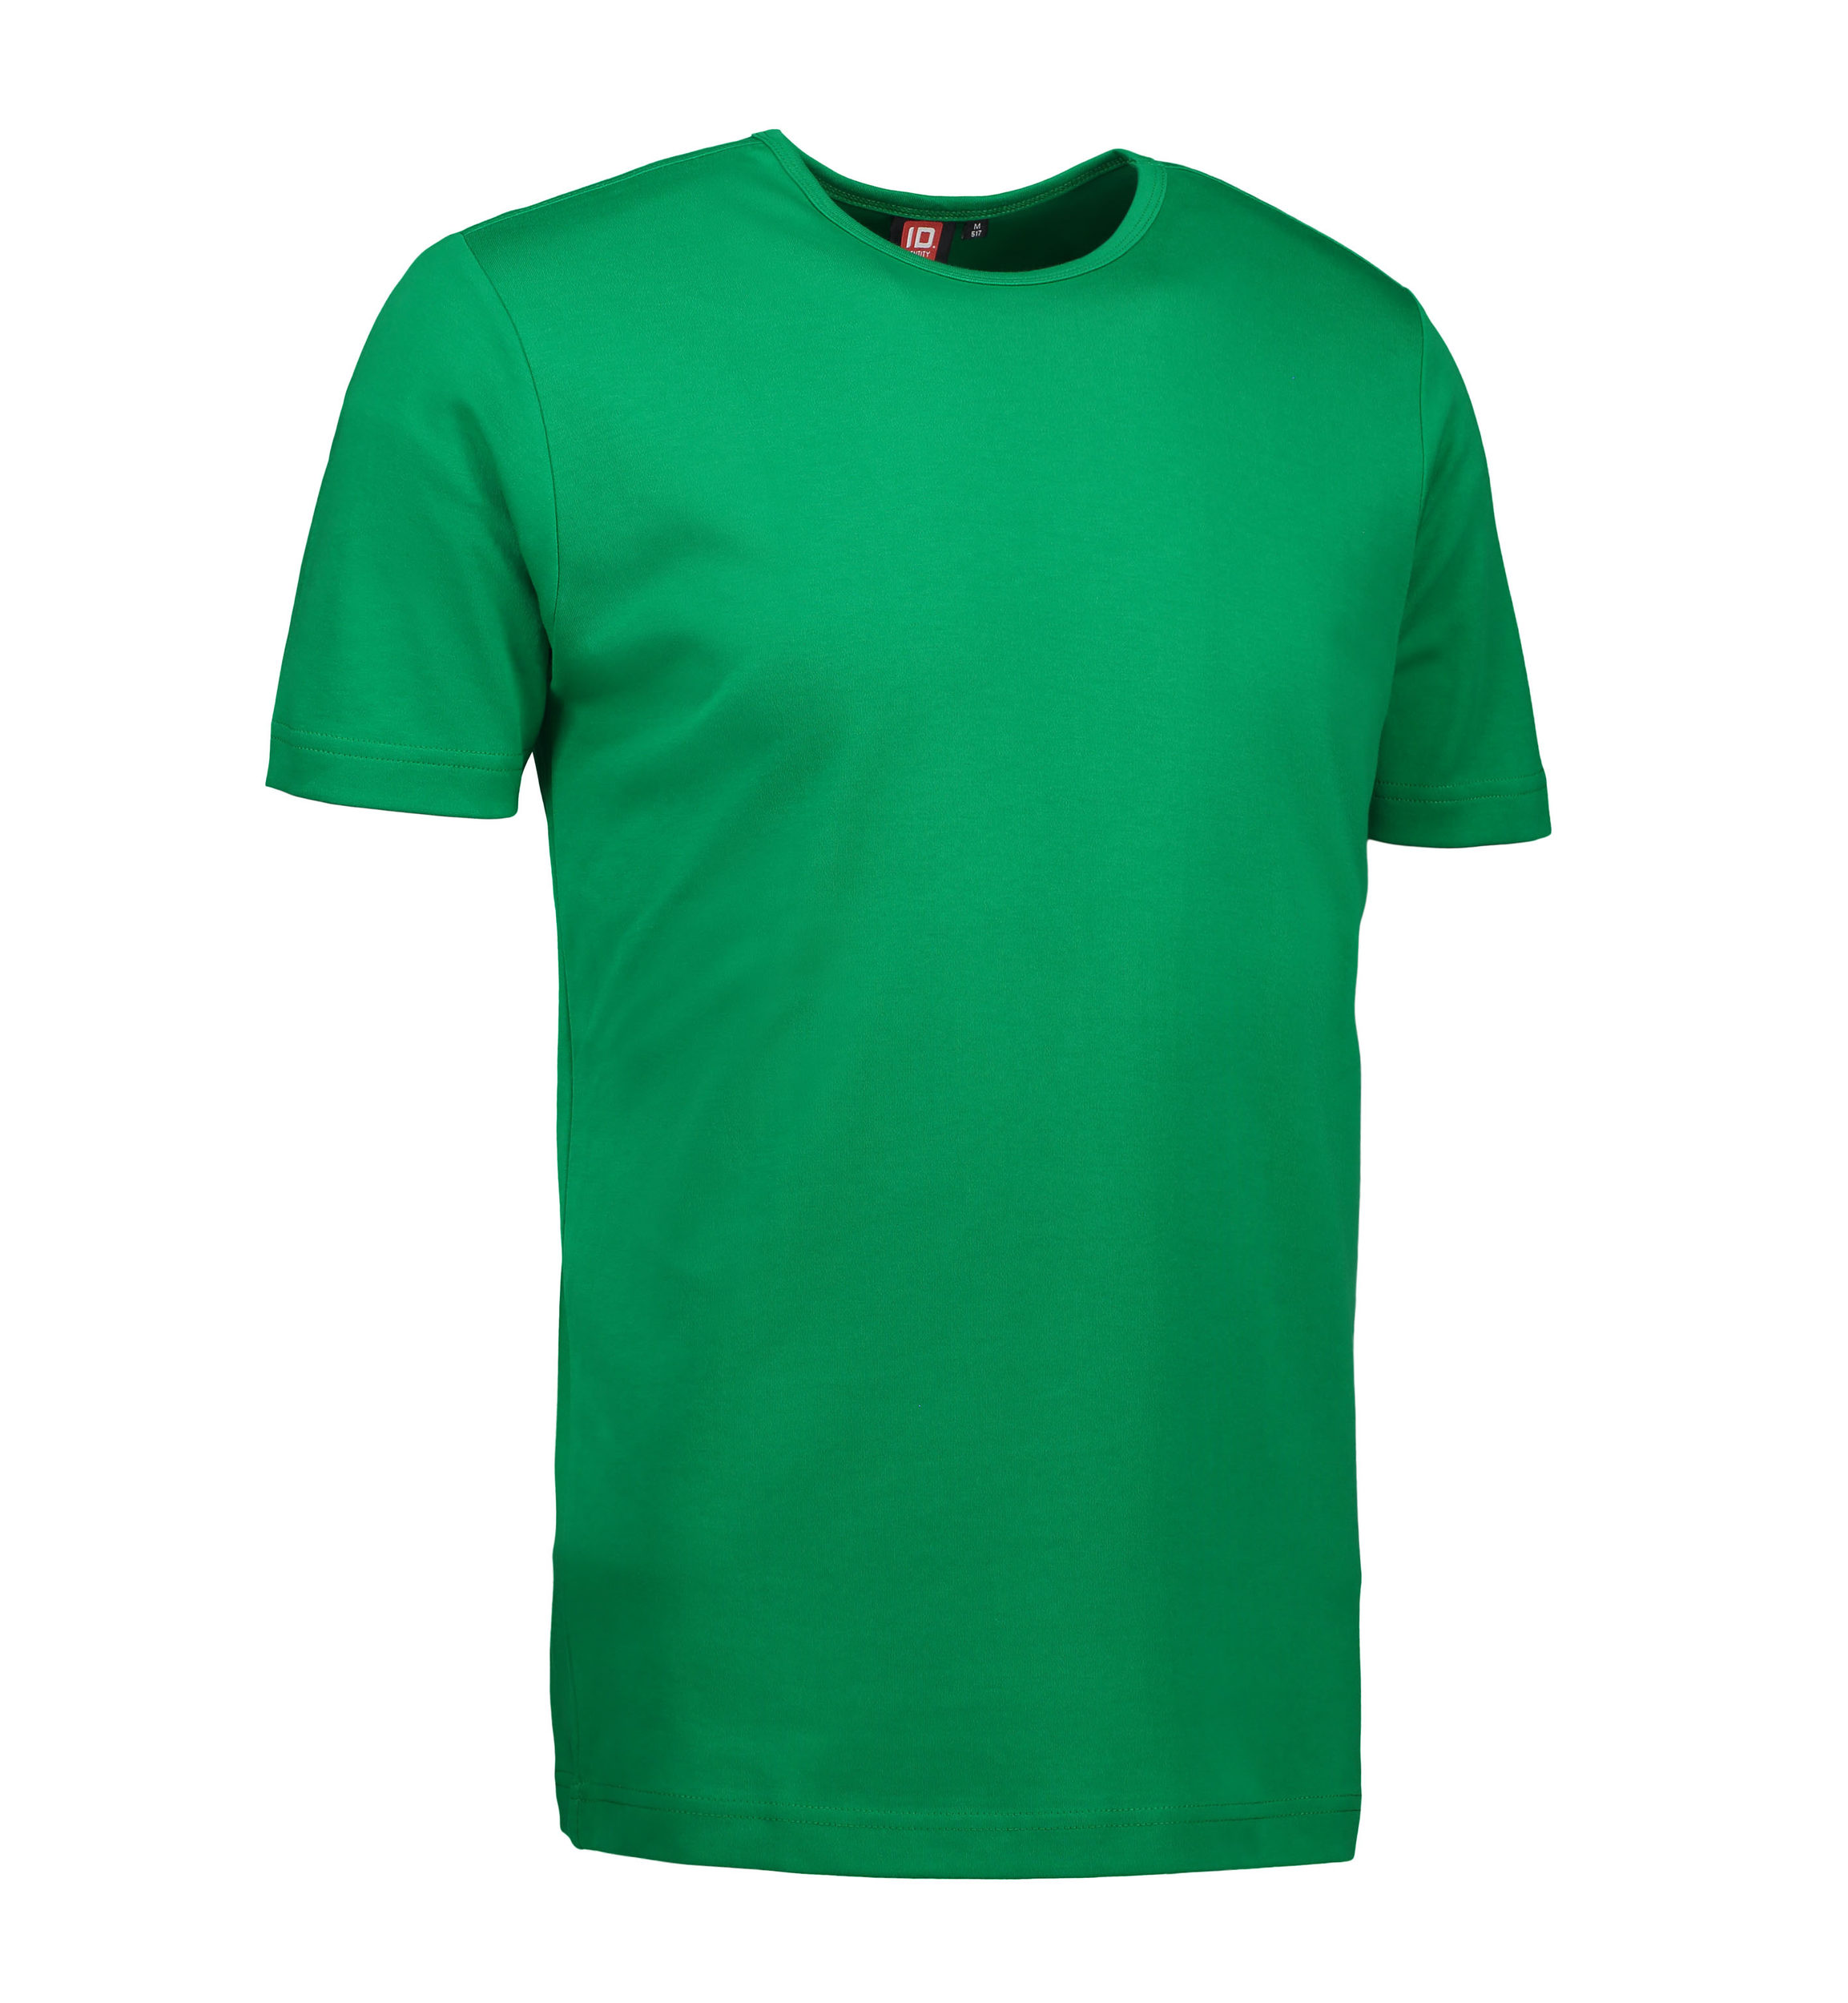 Billede af Grøn t-shirt med rund hals til mænd - L hos Sygeplejebutikken.dk